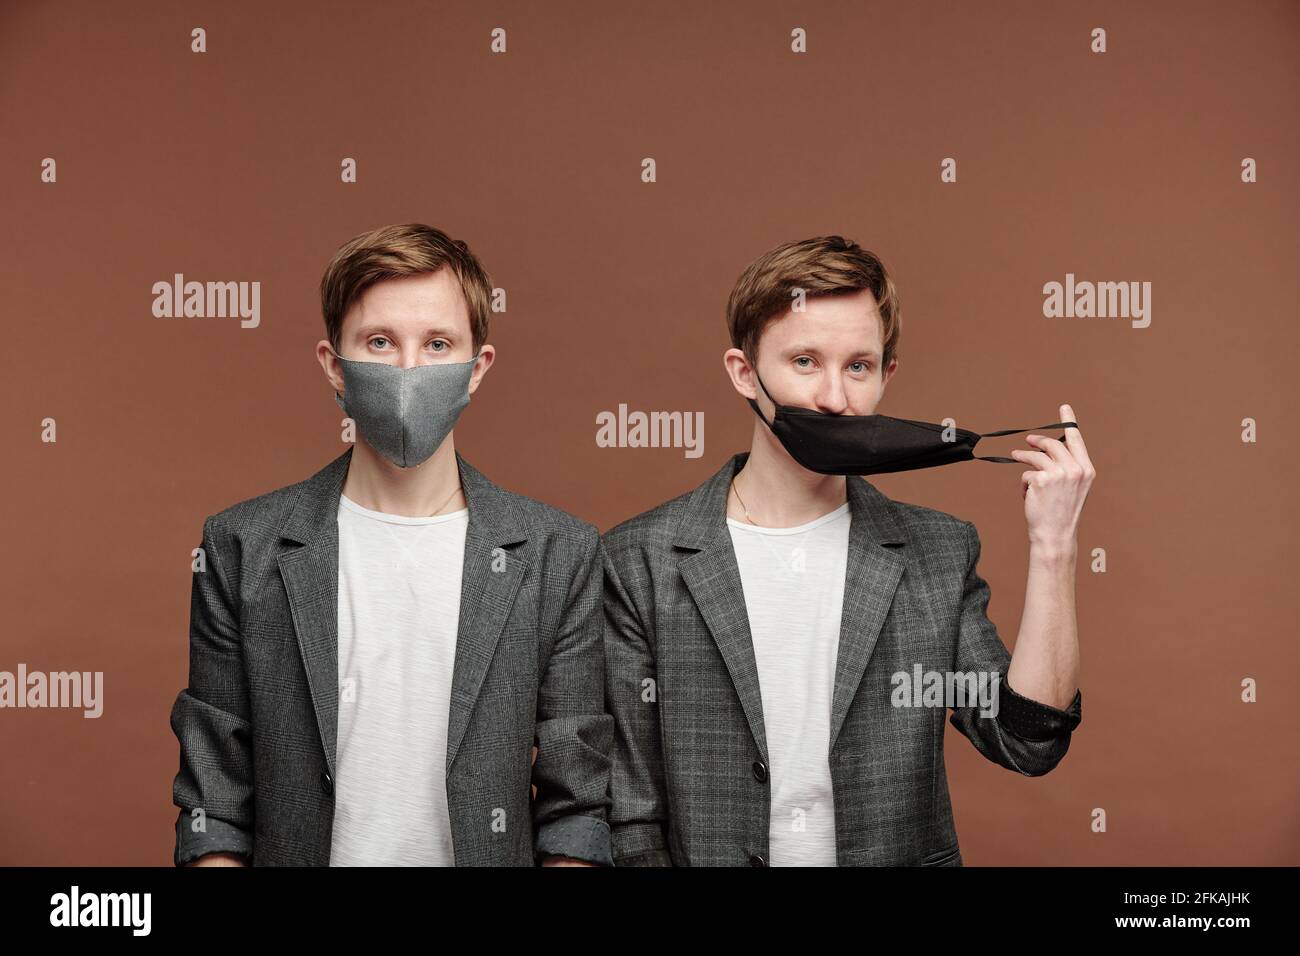 Ritratto di bei fratelli gemelli in eleganti abiti grigi che si posano in maschere su sfondo marrone, uno di loro tirando maschera Foto Stock